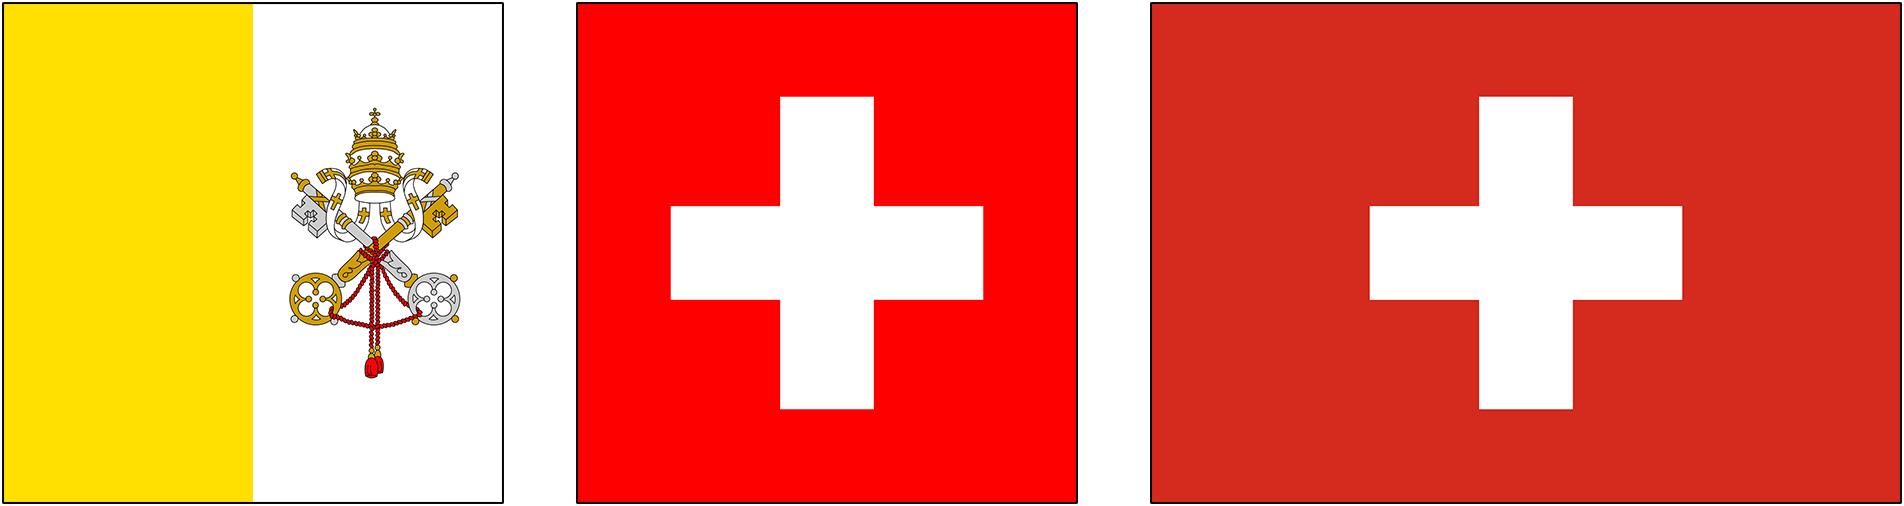 Drapeau du Vatican et drapeaux de la Suisse